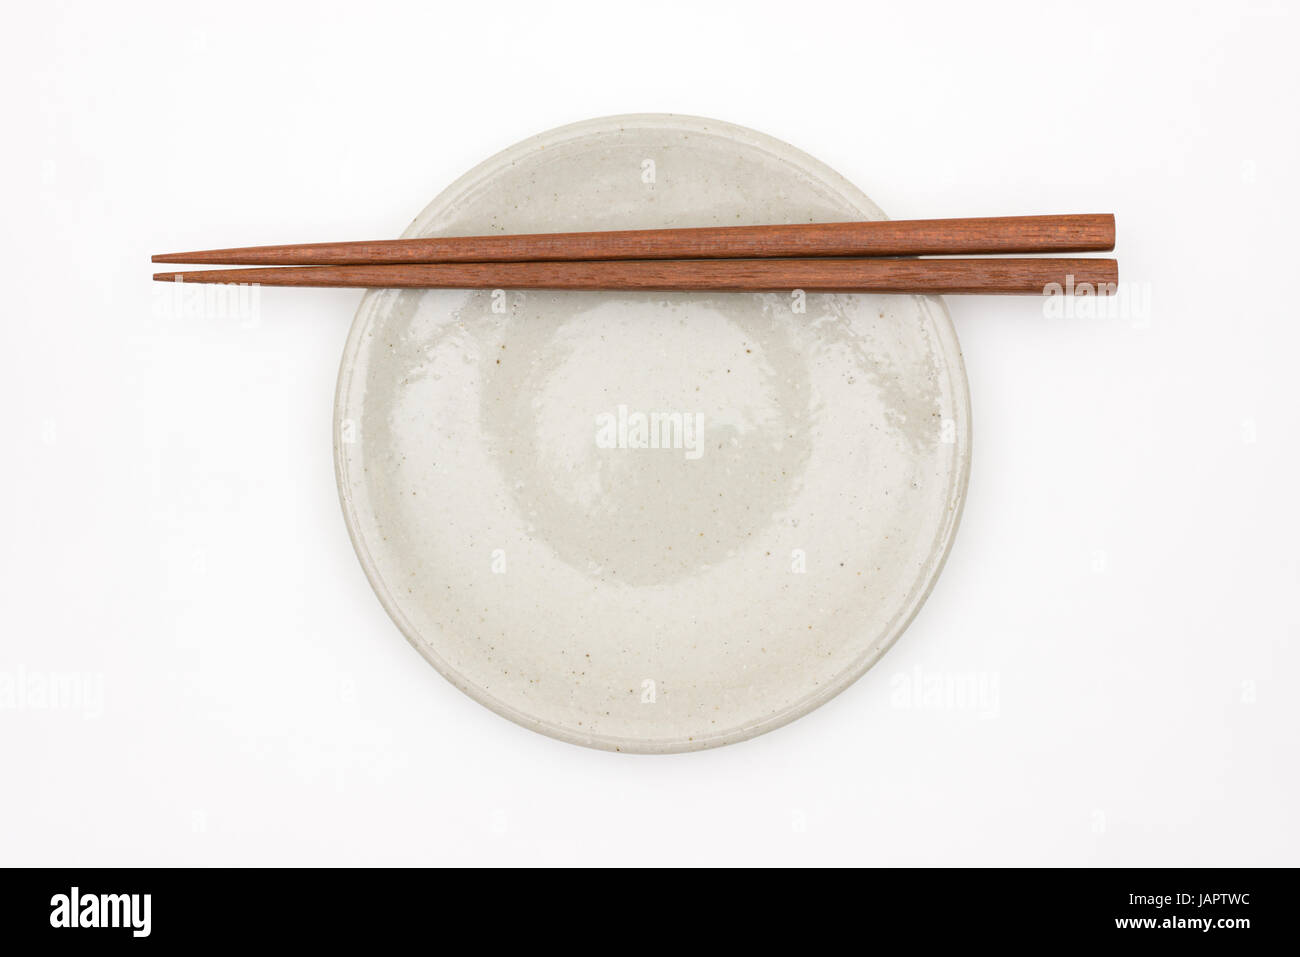 Traditionelle japanische hölzerne Essstäbchen auf weißen Keramikplatte Stockfoto